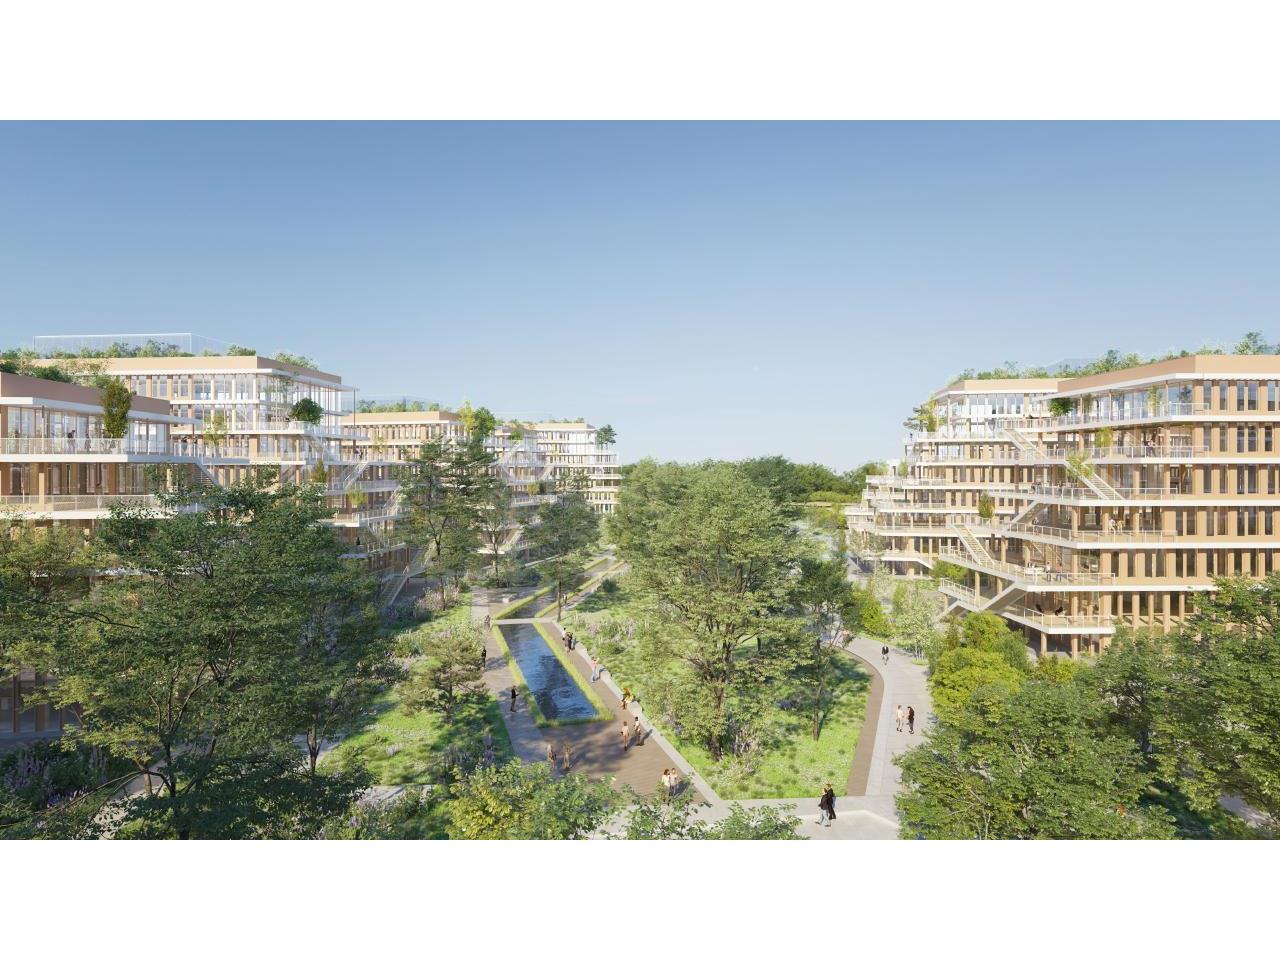 Comment créer un jardin potager au sein de votre immeuble ? - Immobilier  Lille, Nantes, Paris : Agence immobilière, location, vente